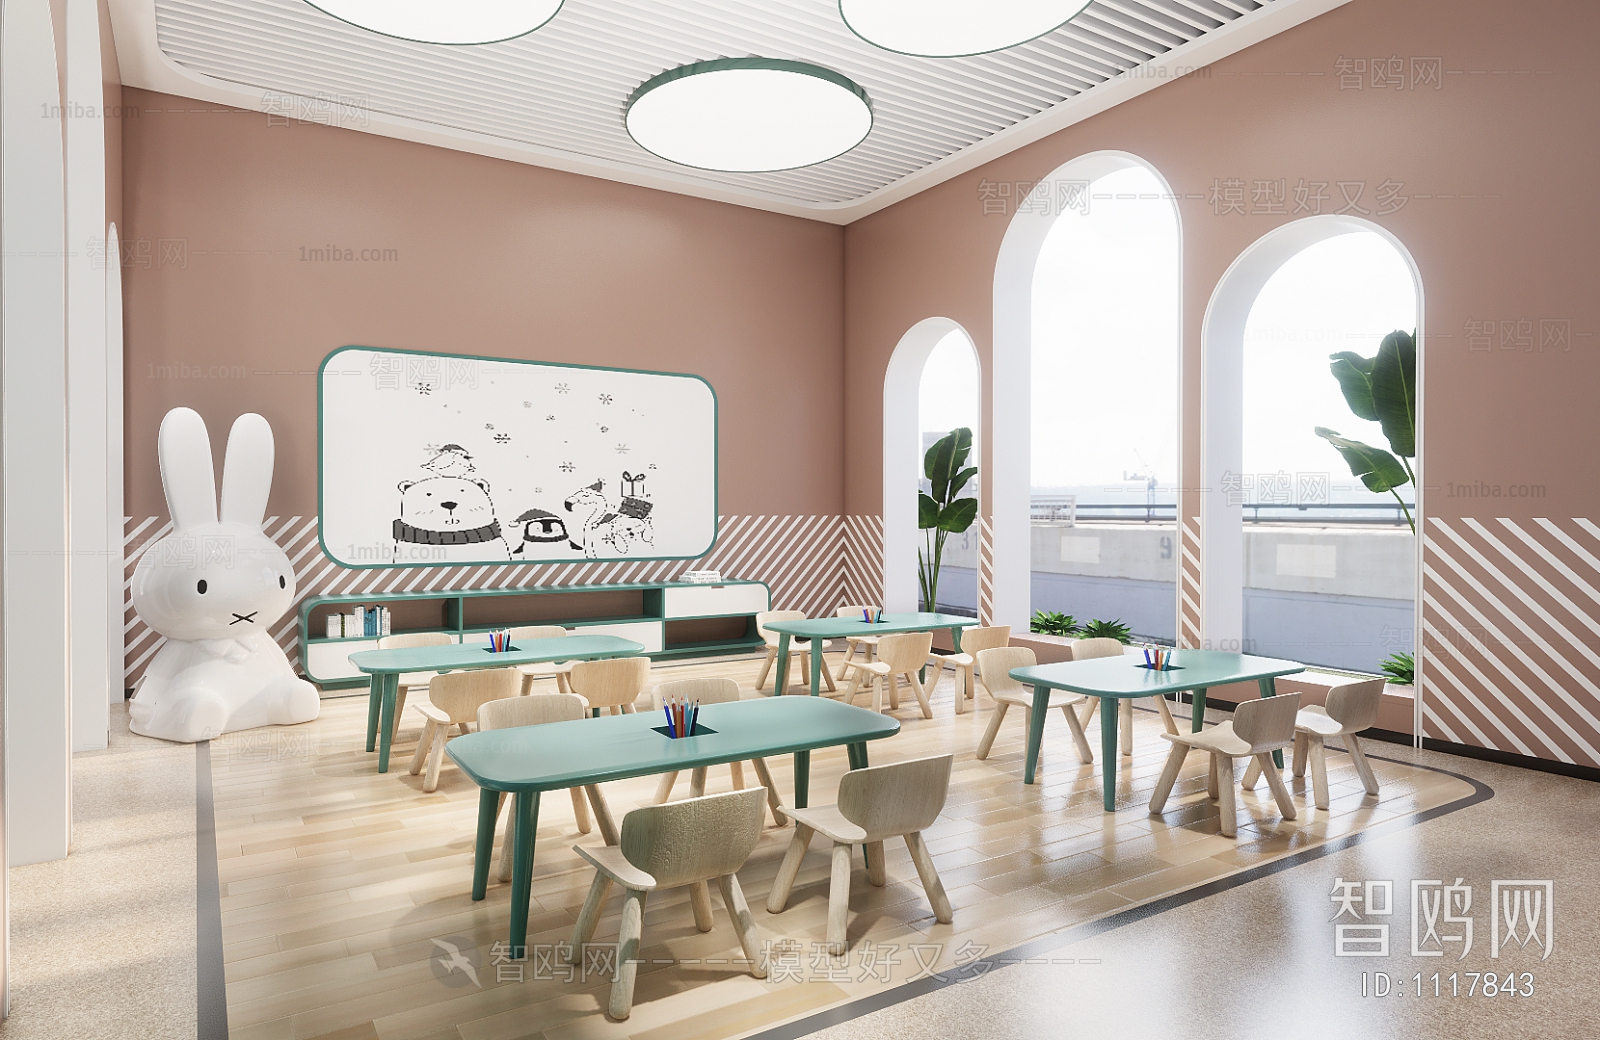 现代儿童幼儿园教室